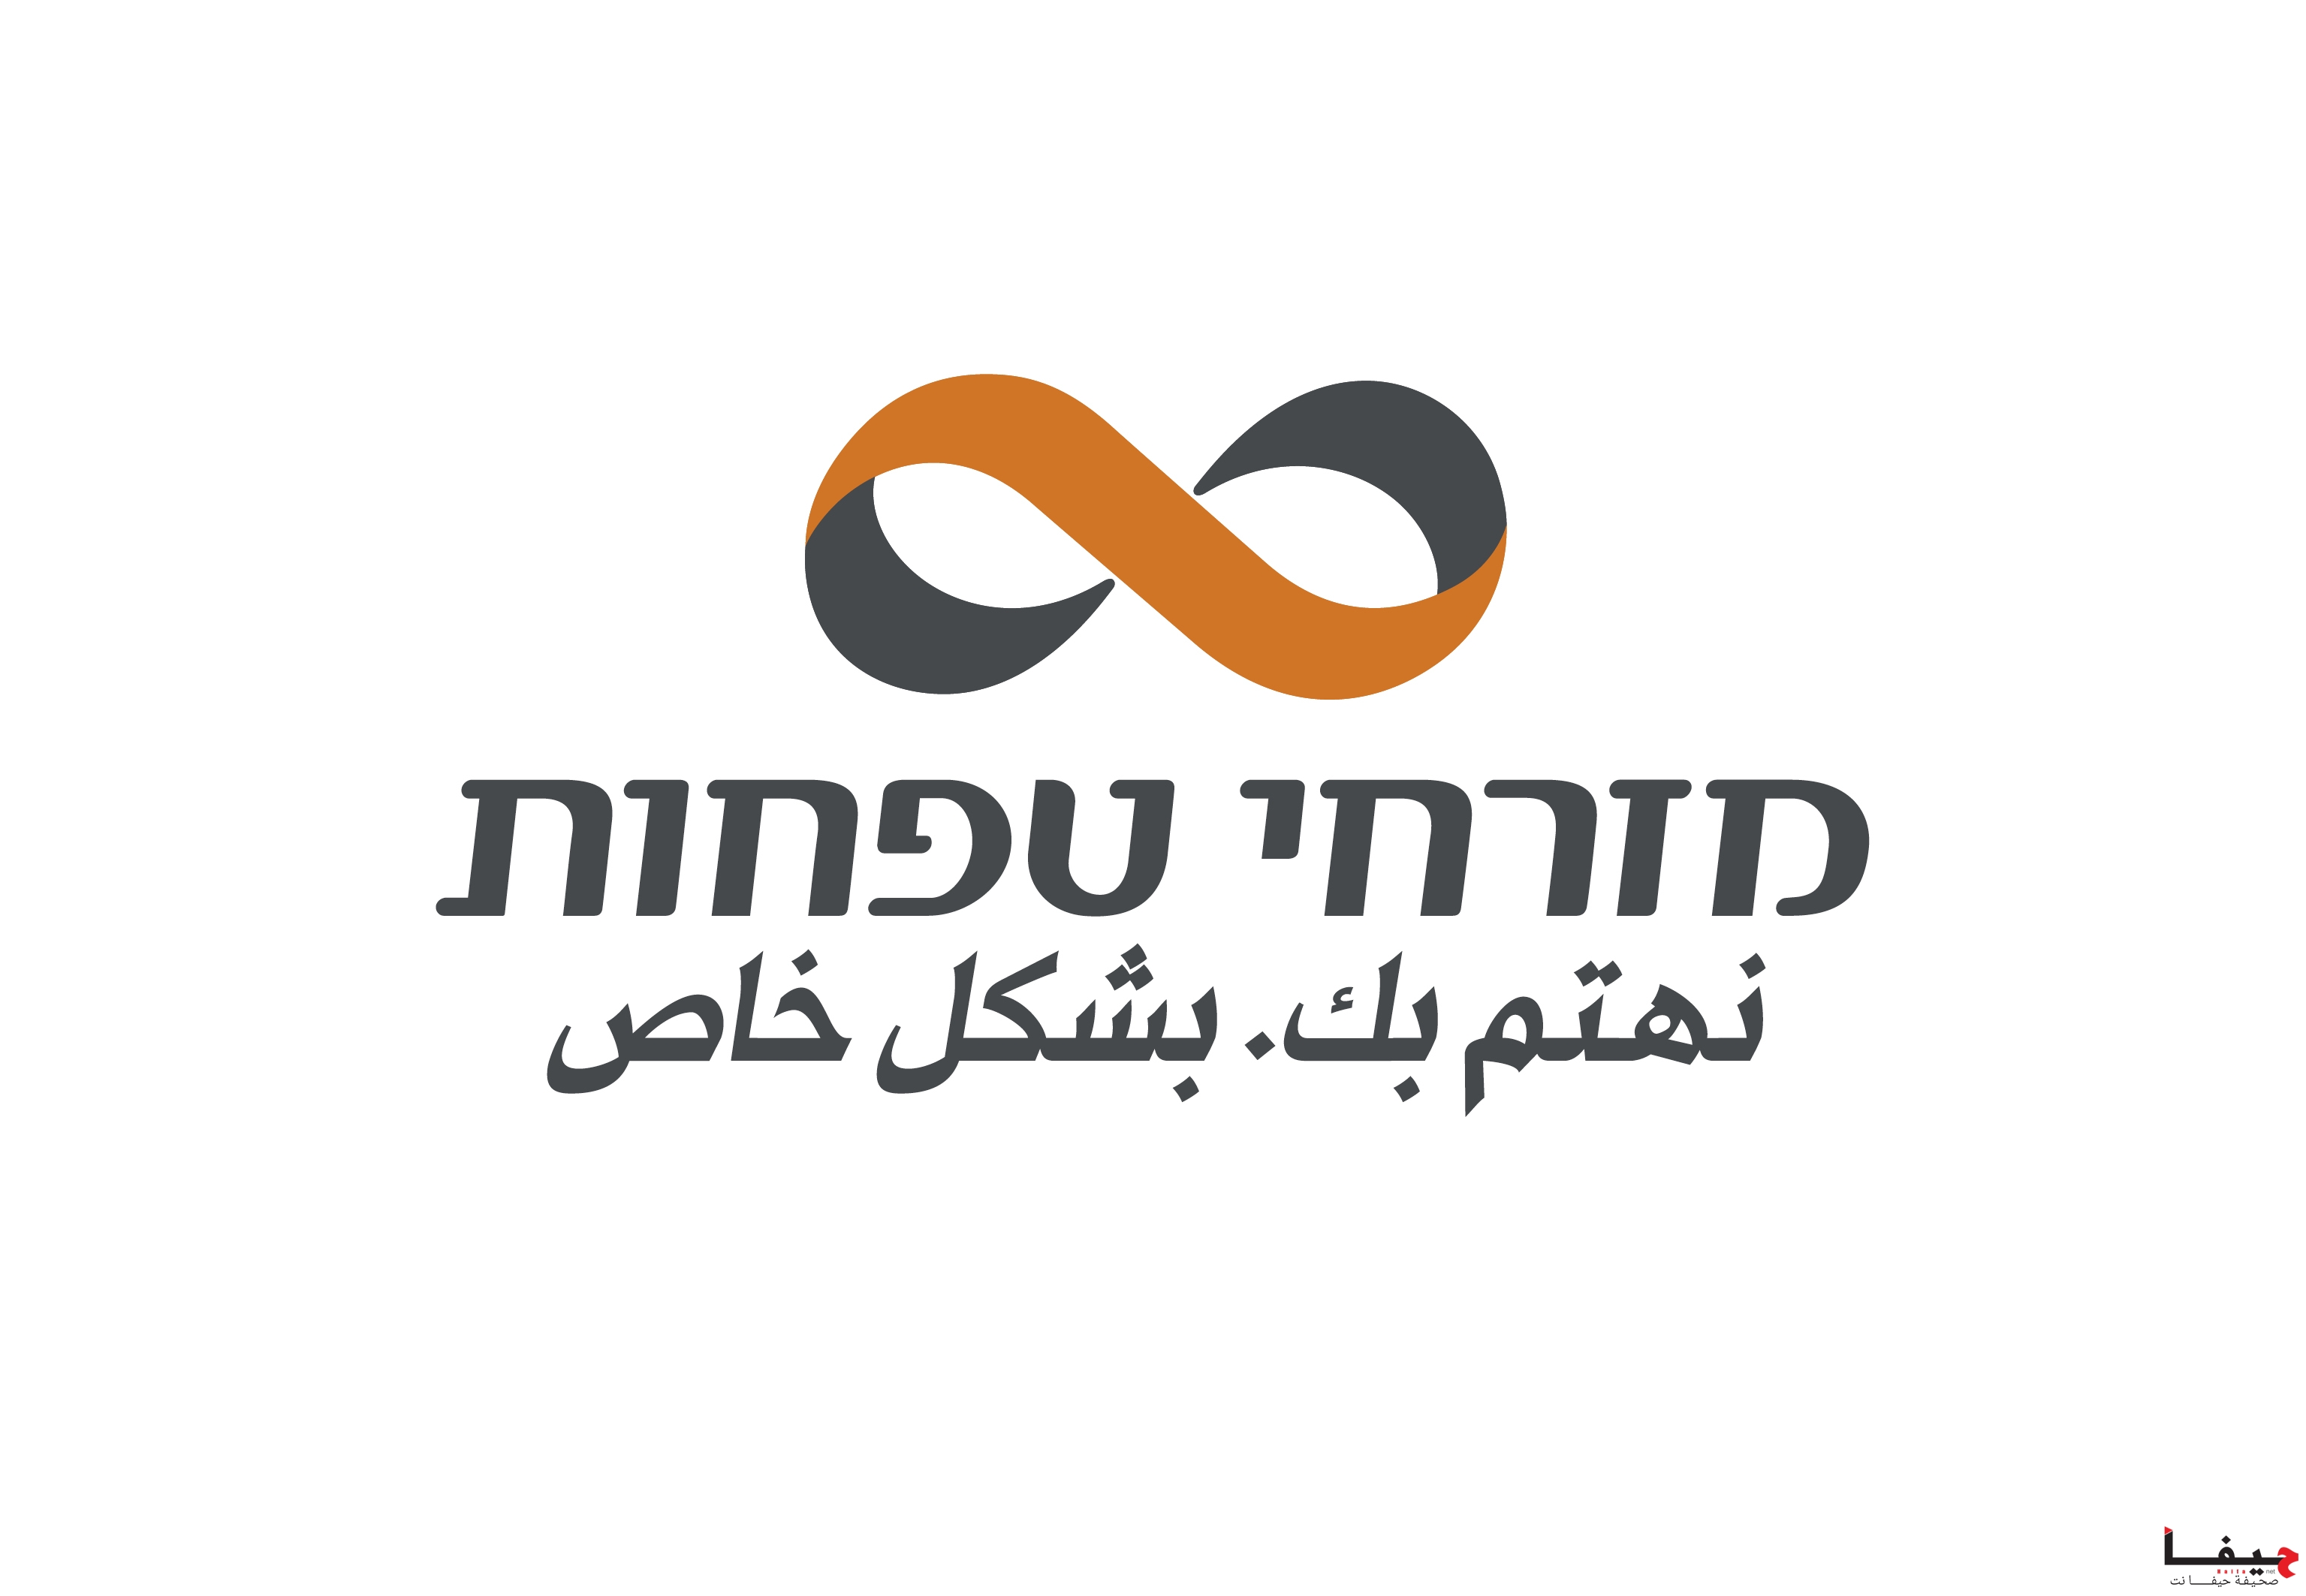 MZR_logo (11)